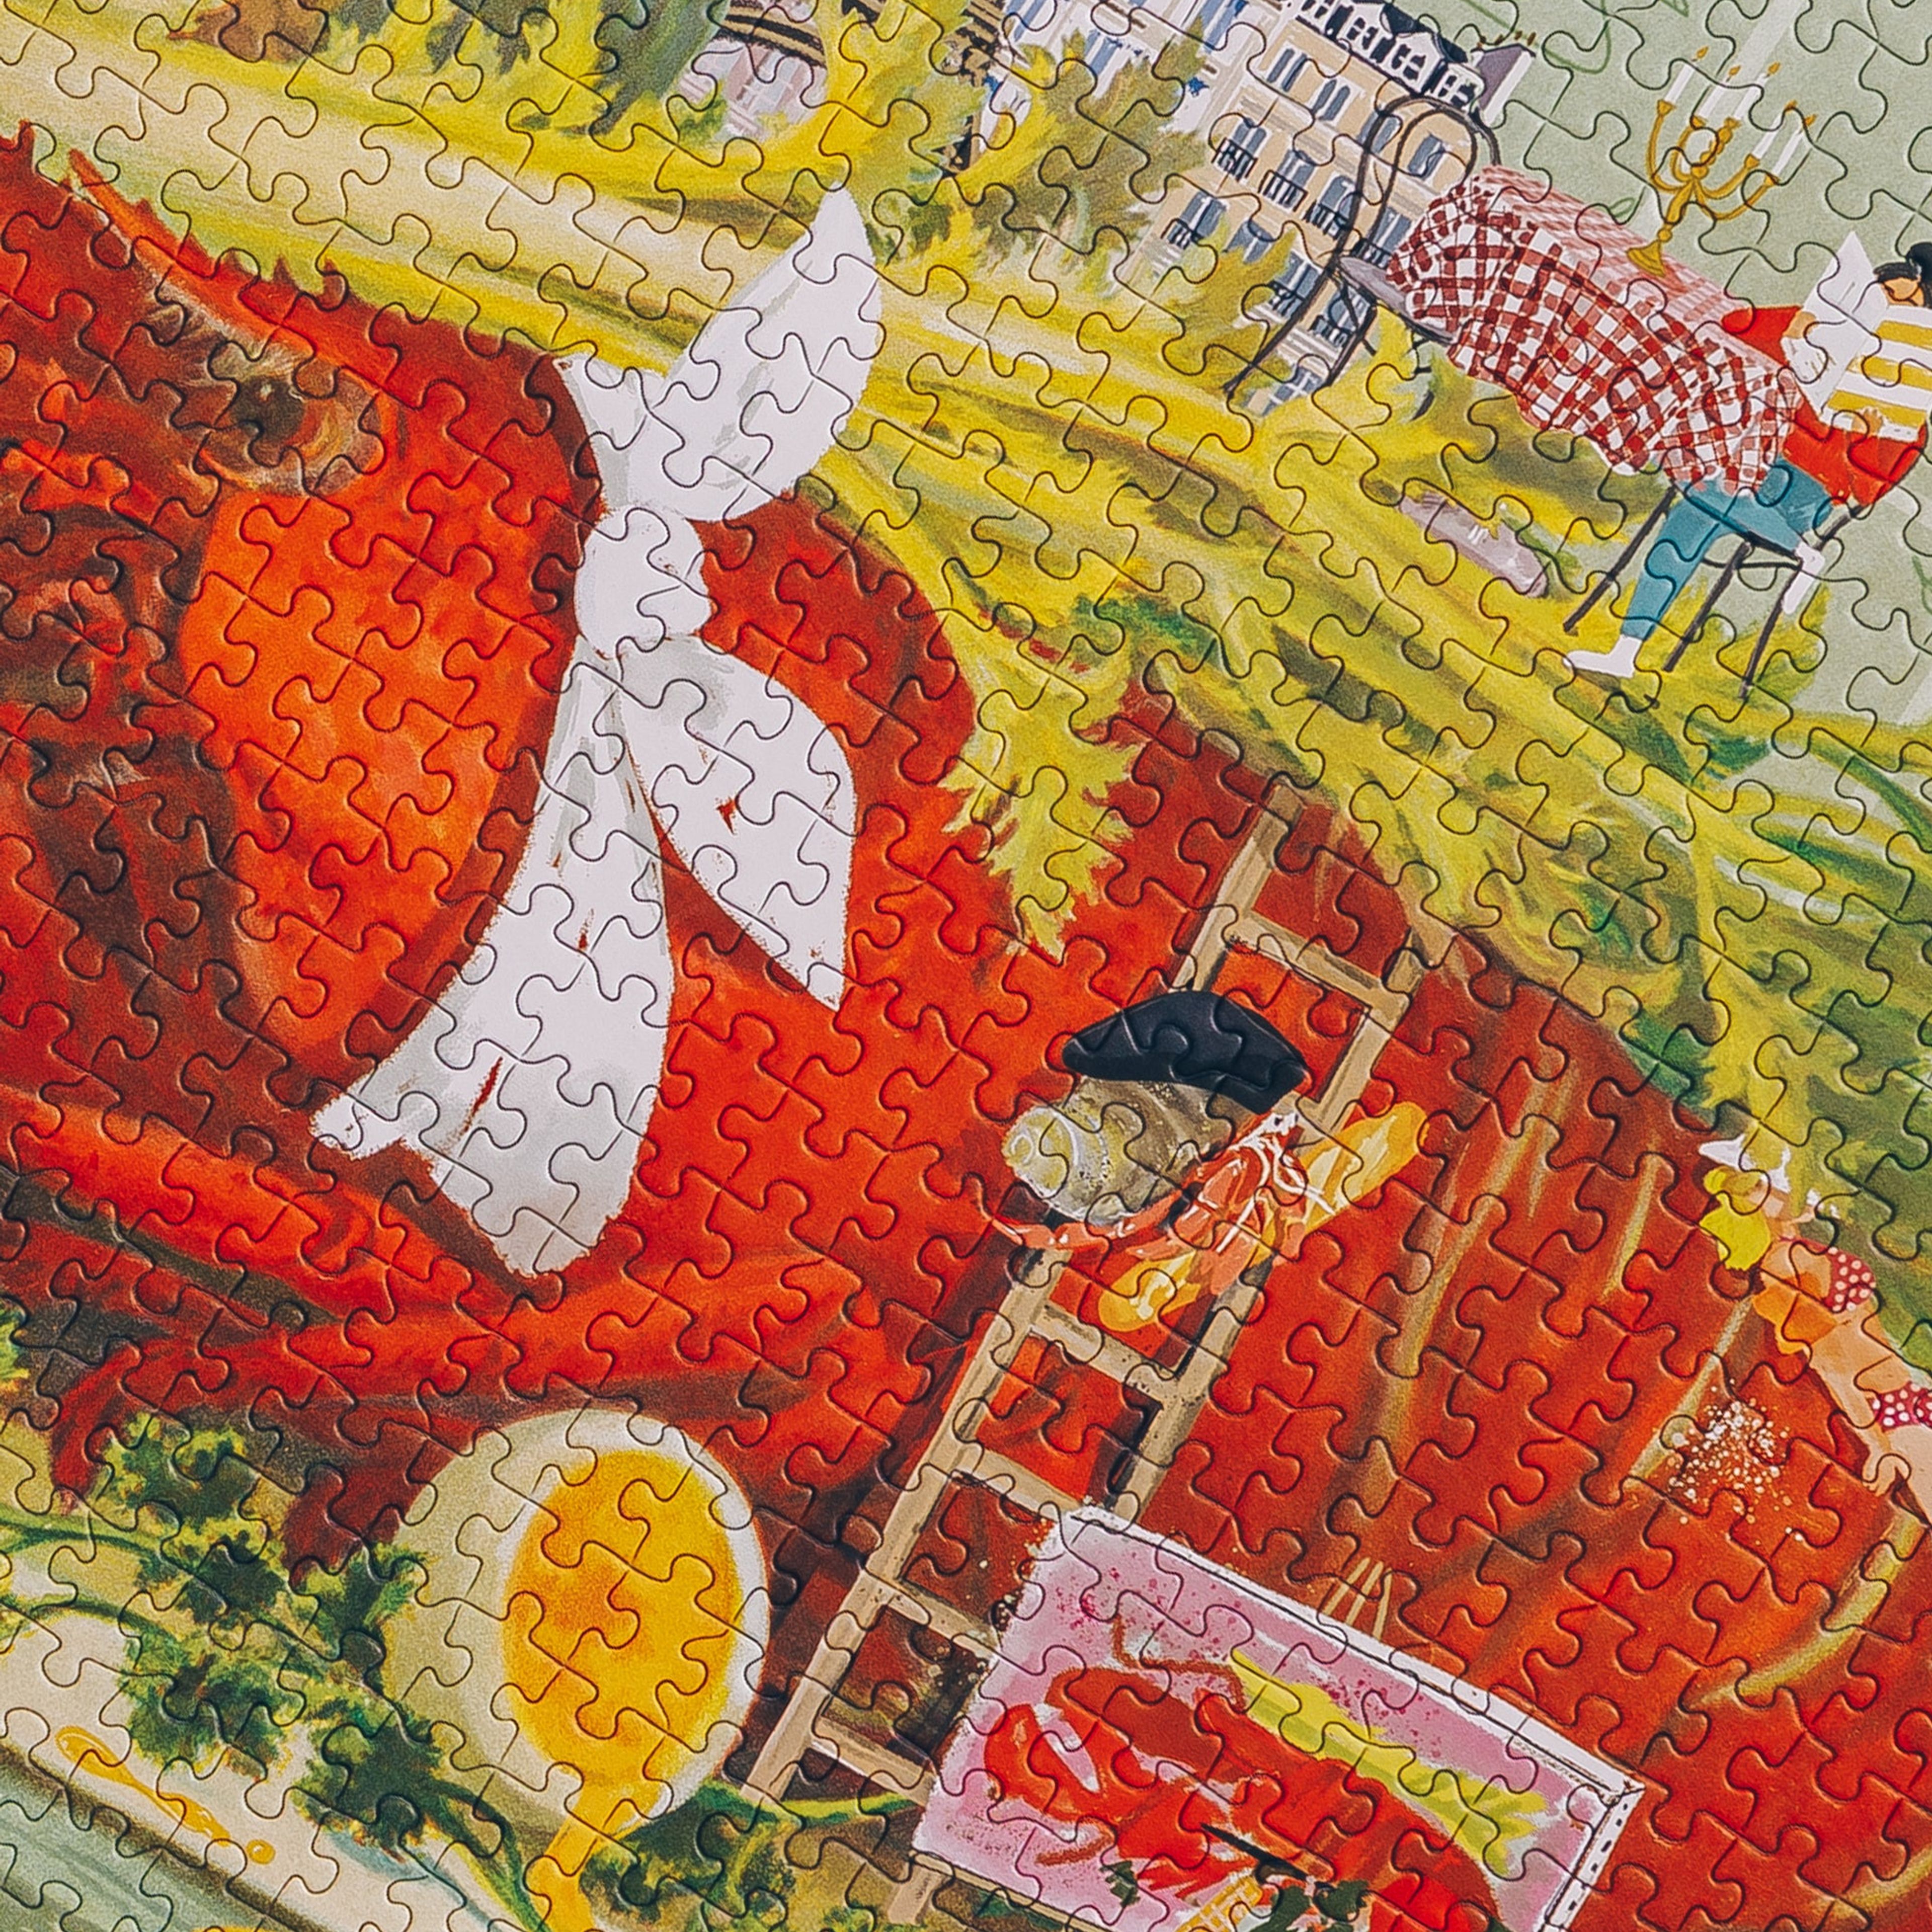 Le Lobster – 1,000 pieces